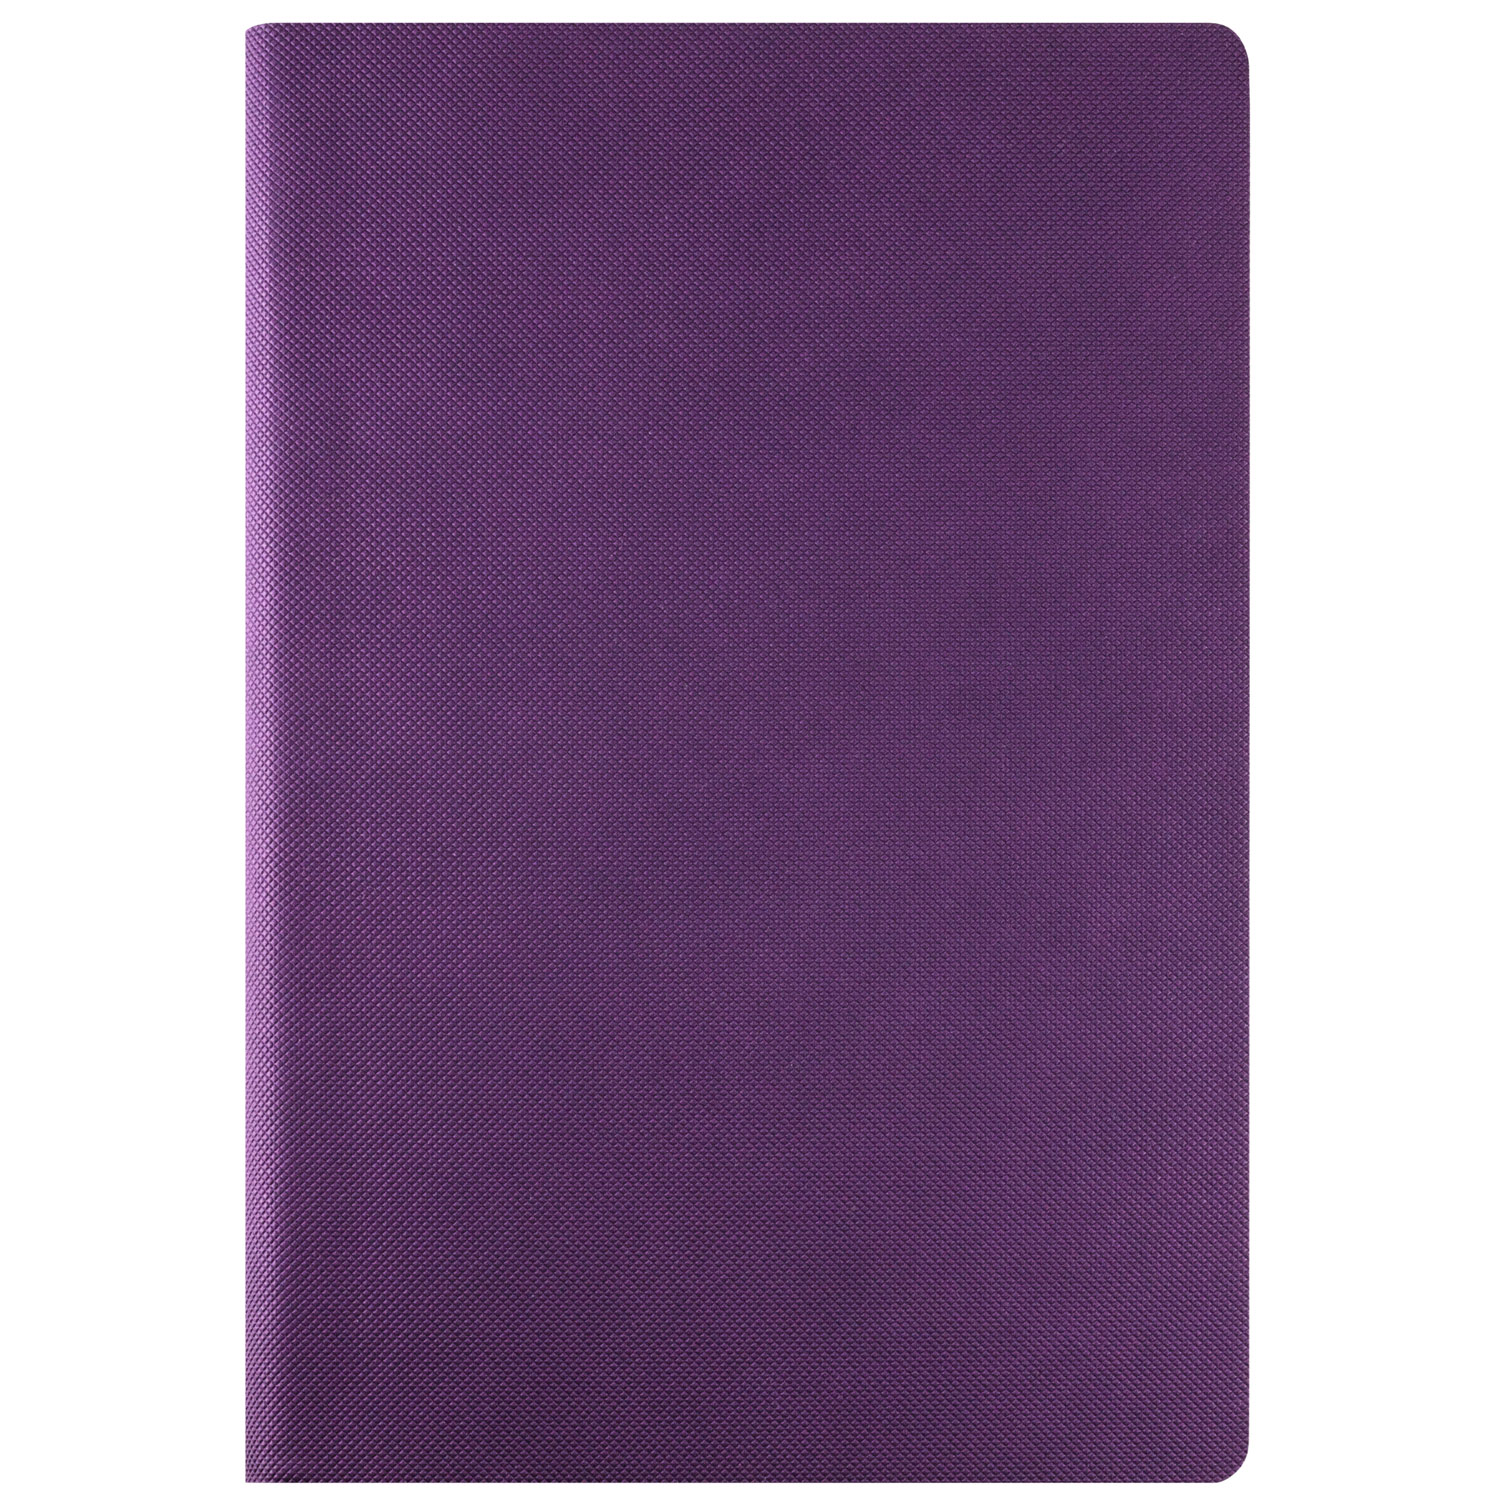 Ежедневник недатированный, Portobello Trend NEW, Canyon City, 145х210, 224 стр, фиолетовый (без упаковки, без стикера)